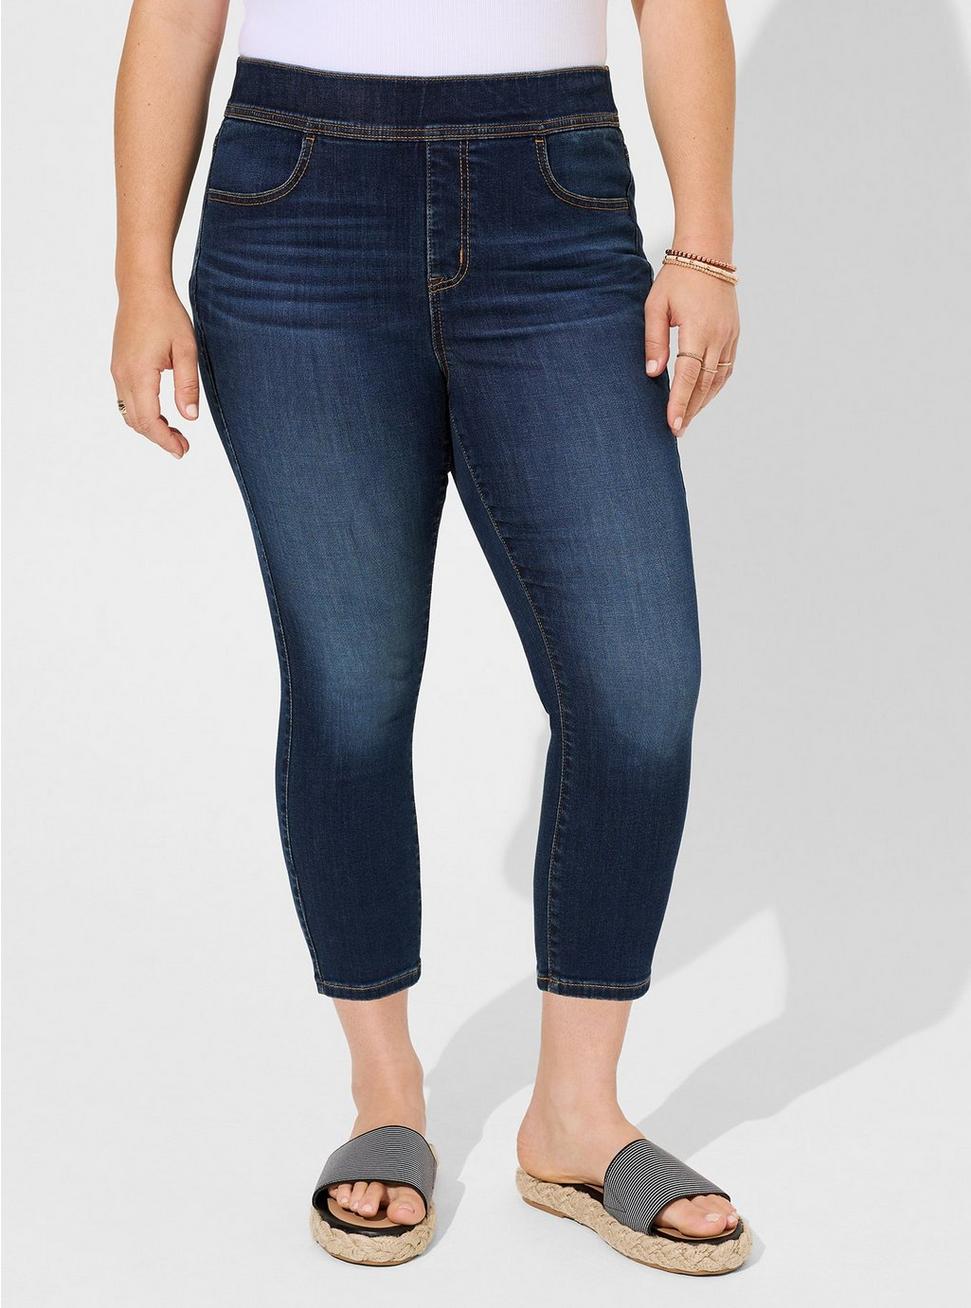 Crop Lean Jean Skinny Super Soft High-Rise Jean, HYDROSPHERE CLEAN, alternate